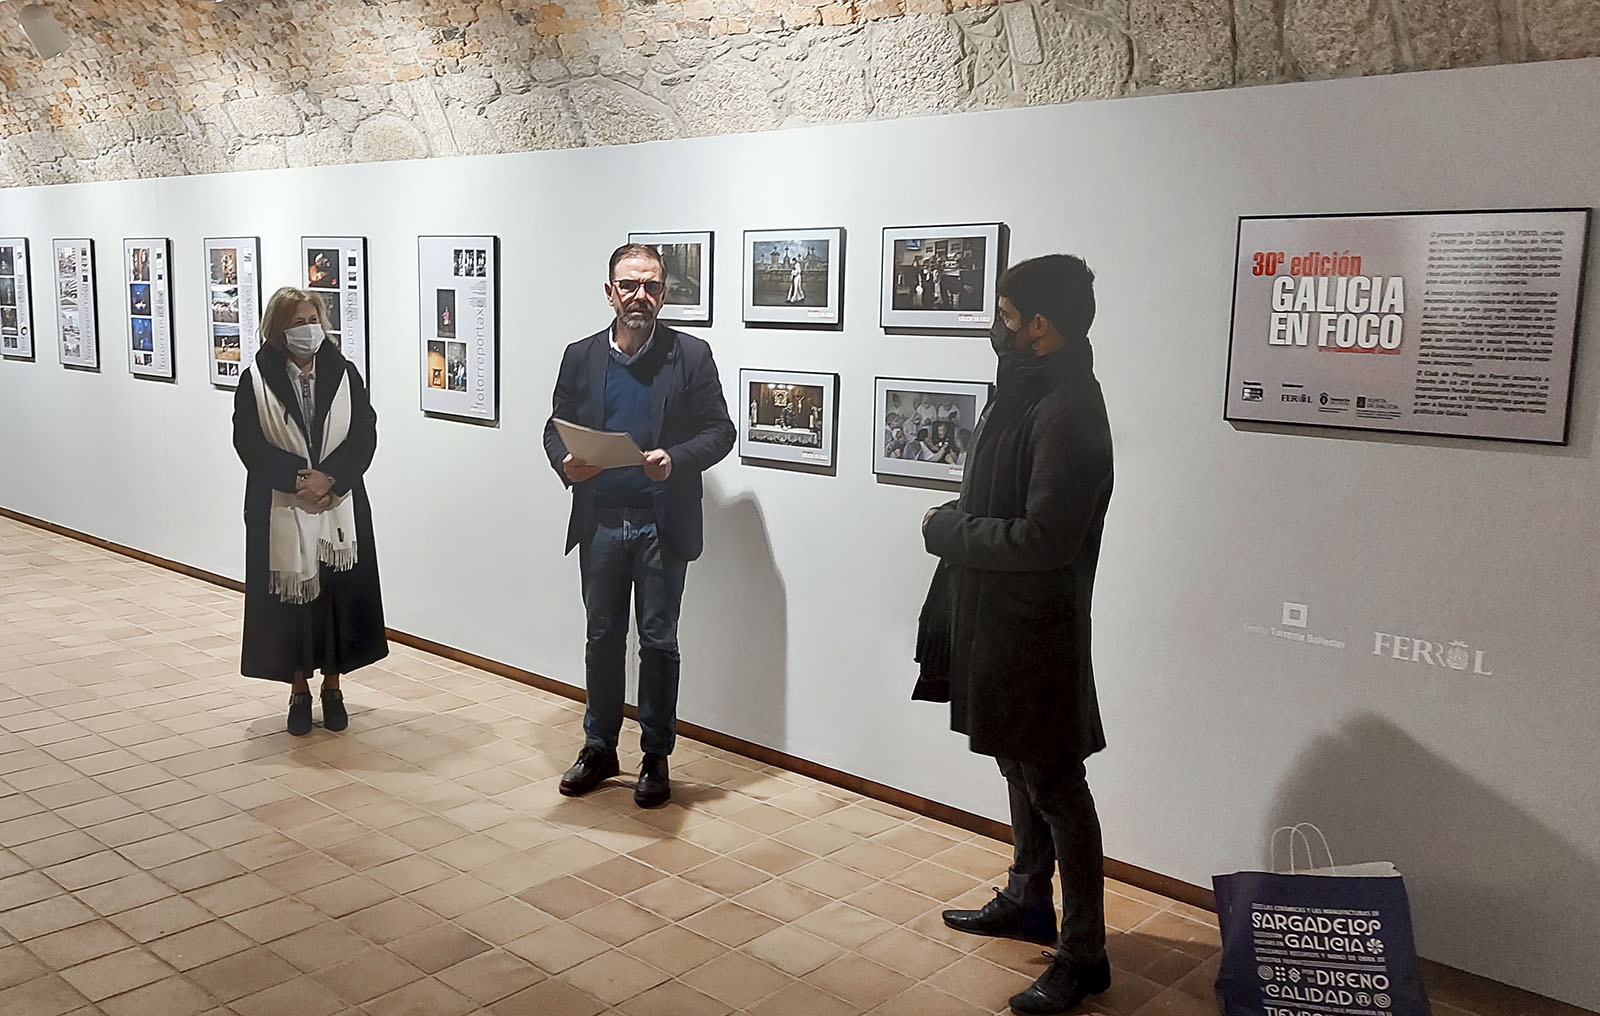 Exposición da 30ª Edición de Galicia en Foco no Centro Torrente Ballester. 2021